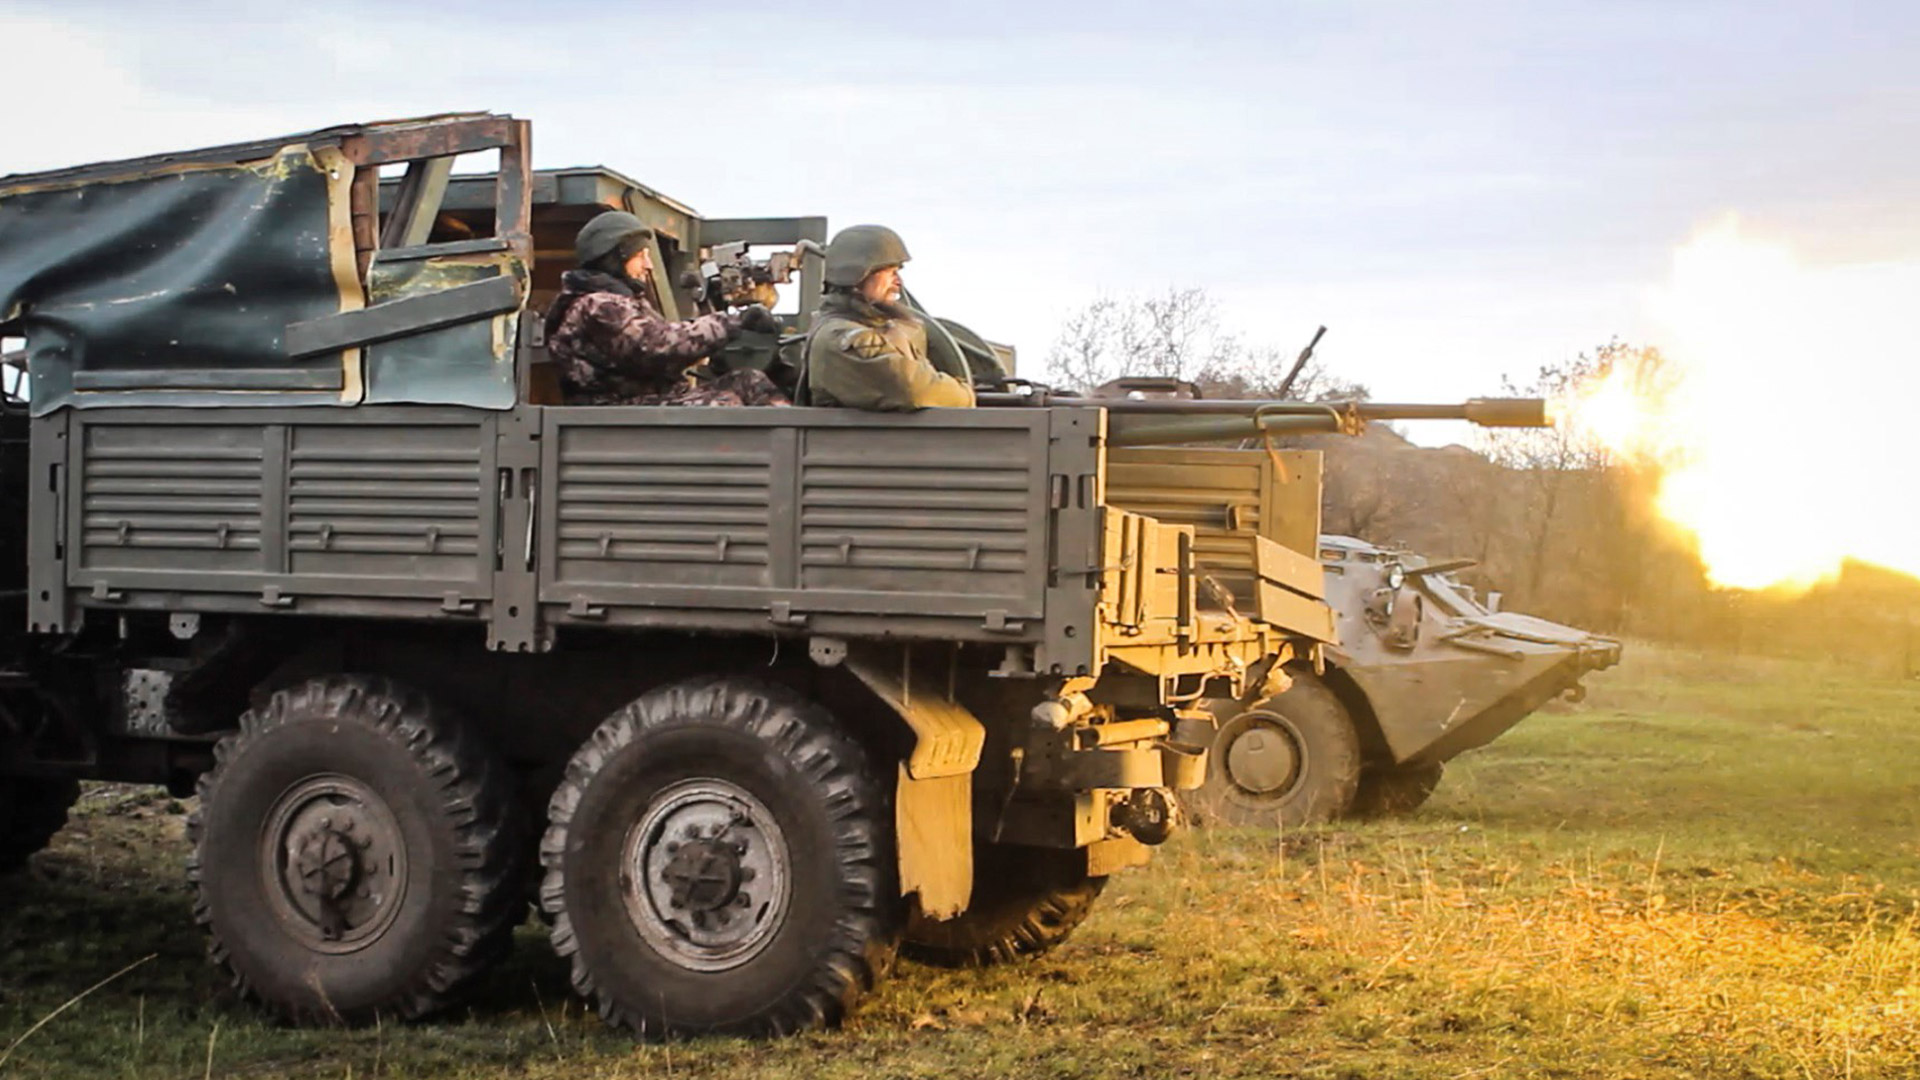 Brigada insurgente del Donbass, región oriental de Ucrania controlada por fuerzas prorrusas